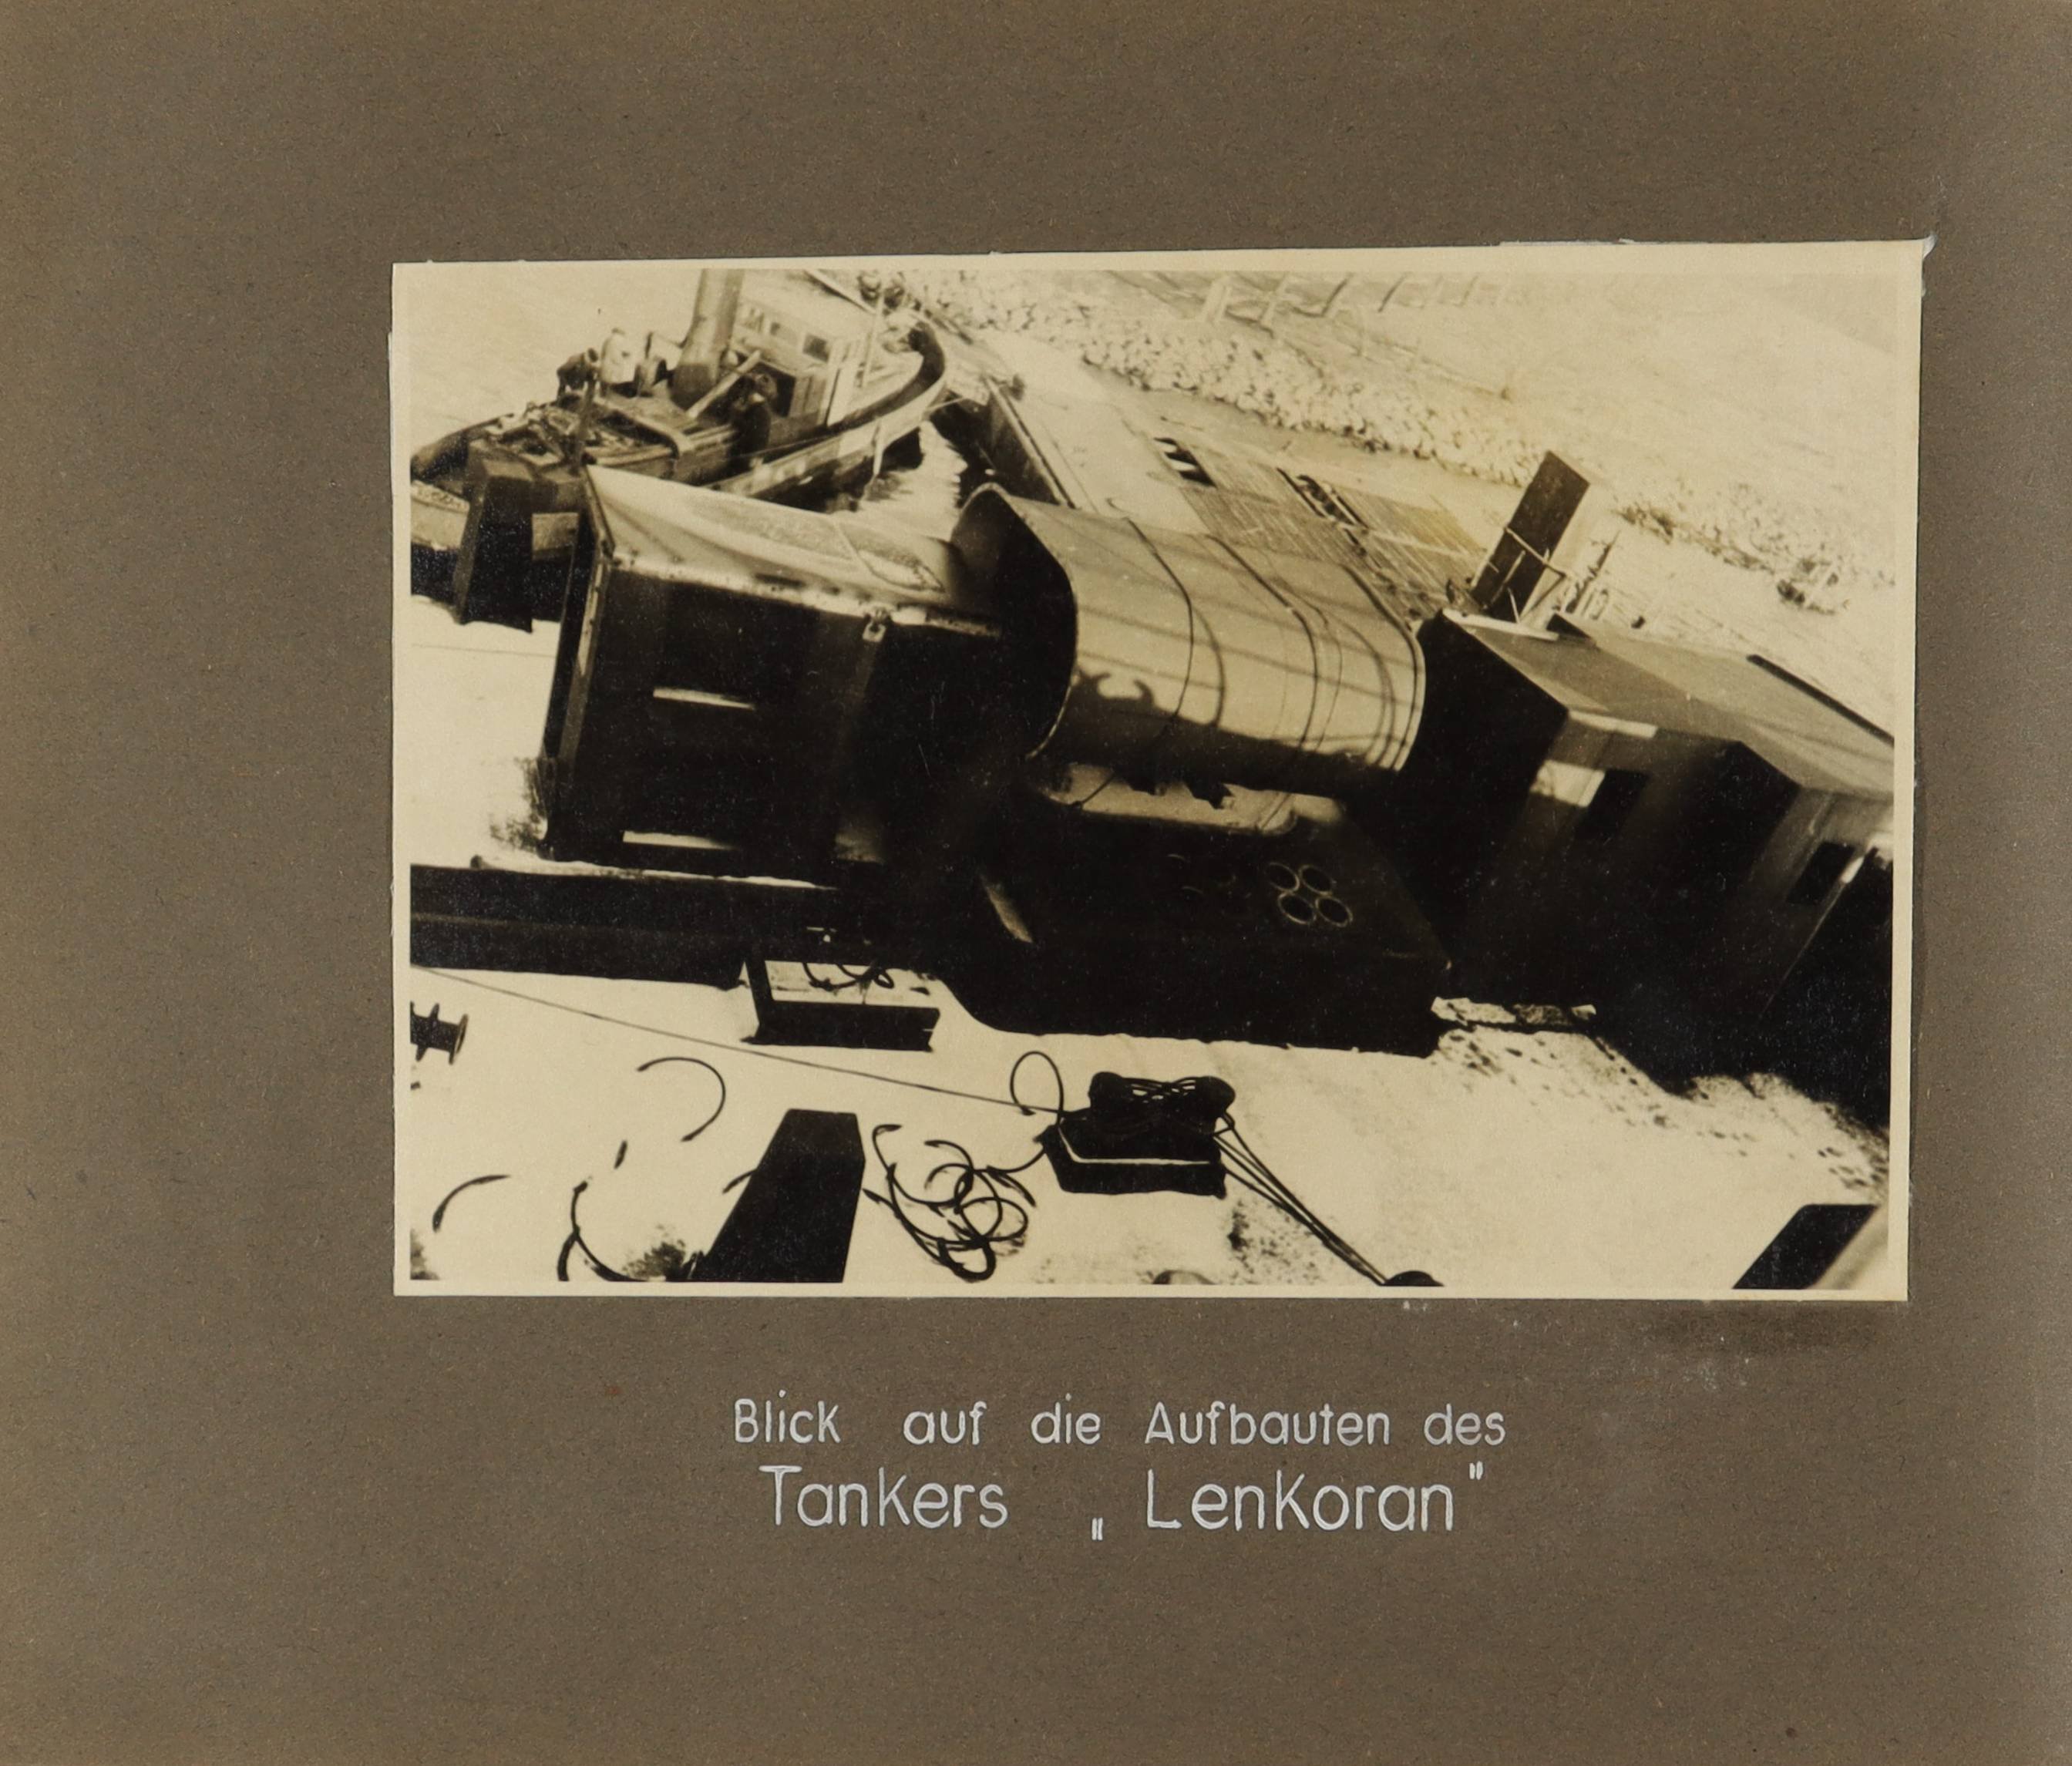 Blick auf die Aufbauten des Tankers "Lenkoran" (Schiffbau- und Schiffahrtsmuseum Rostock RR-F)